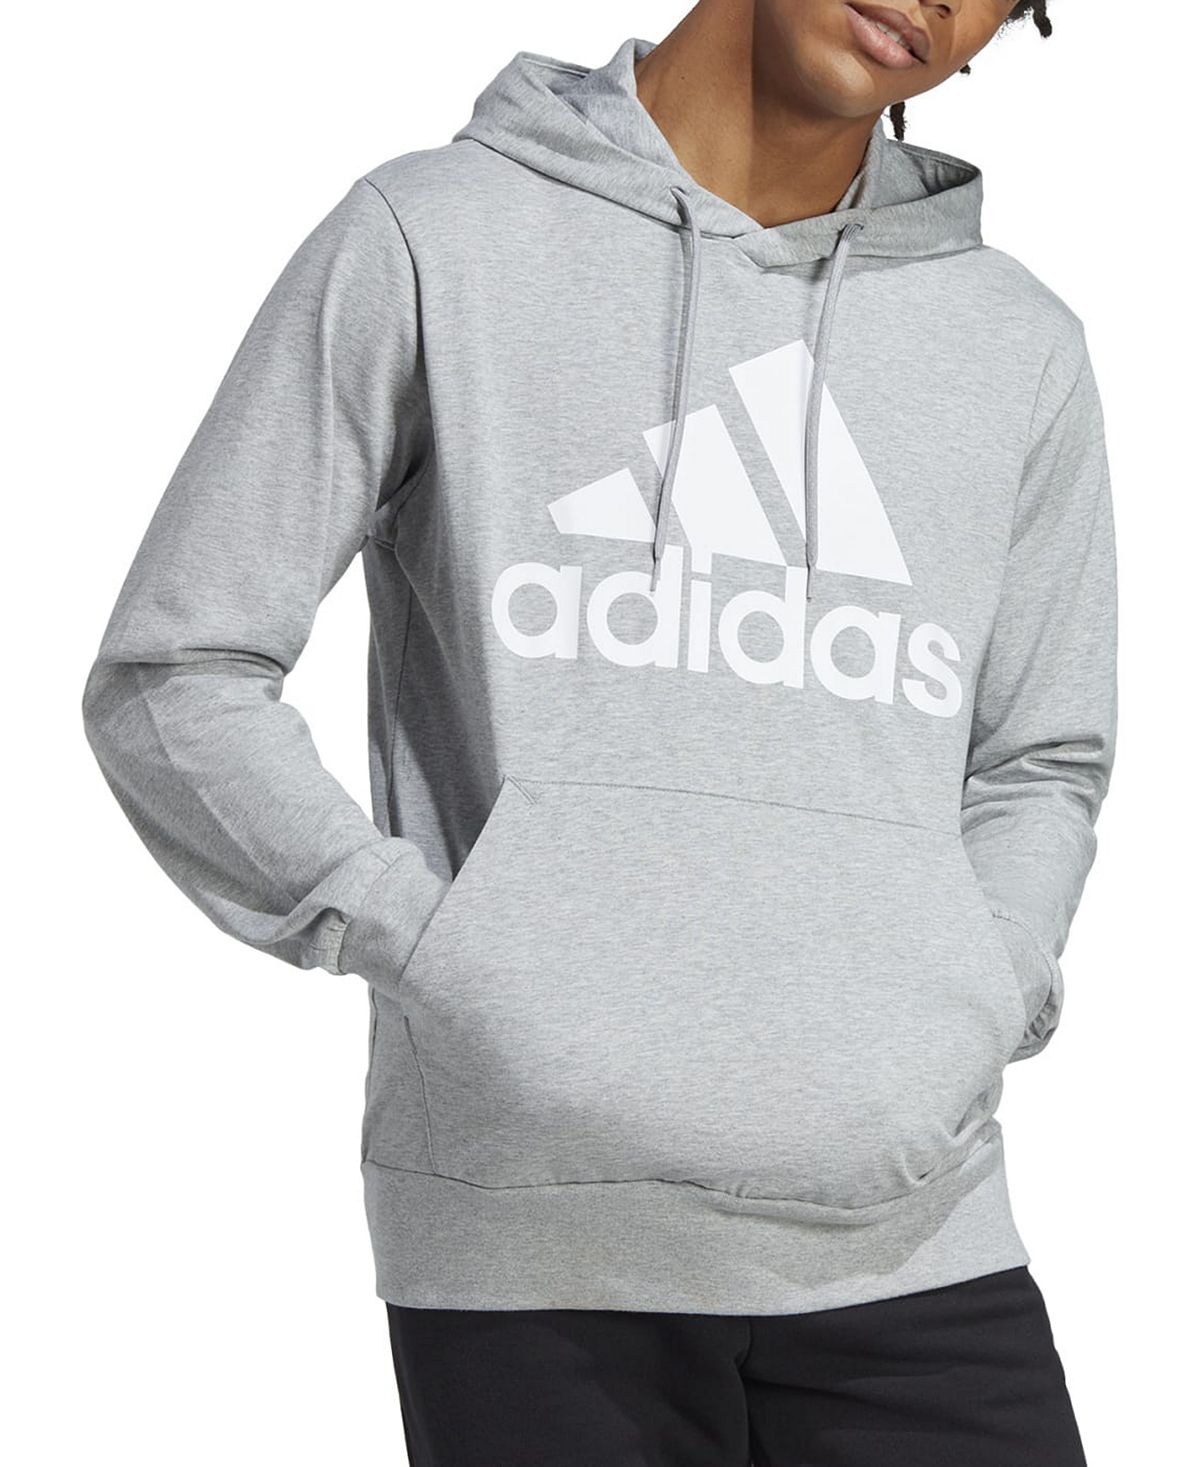 Мужская толстовка с логотипом из джерси Essentials Performance adidas толстовка adidas stadium fleece badge of sport sweatshirt бежевый